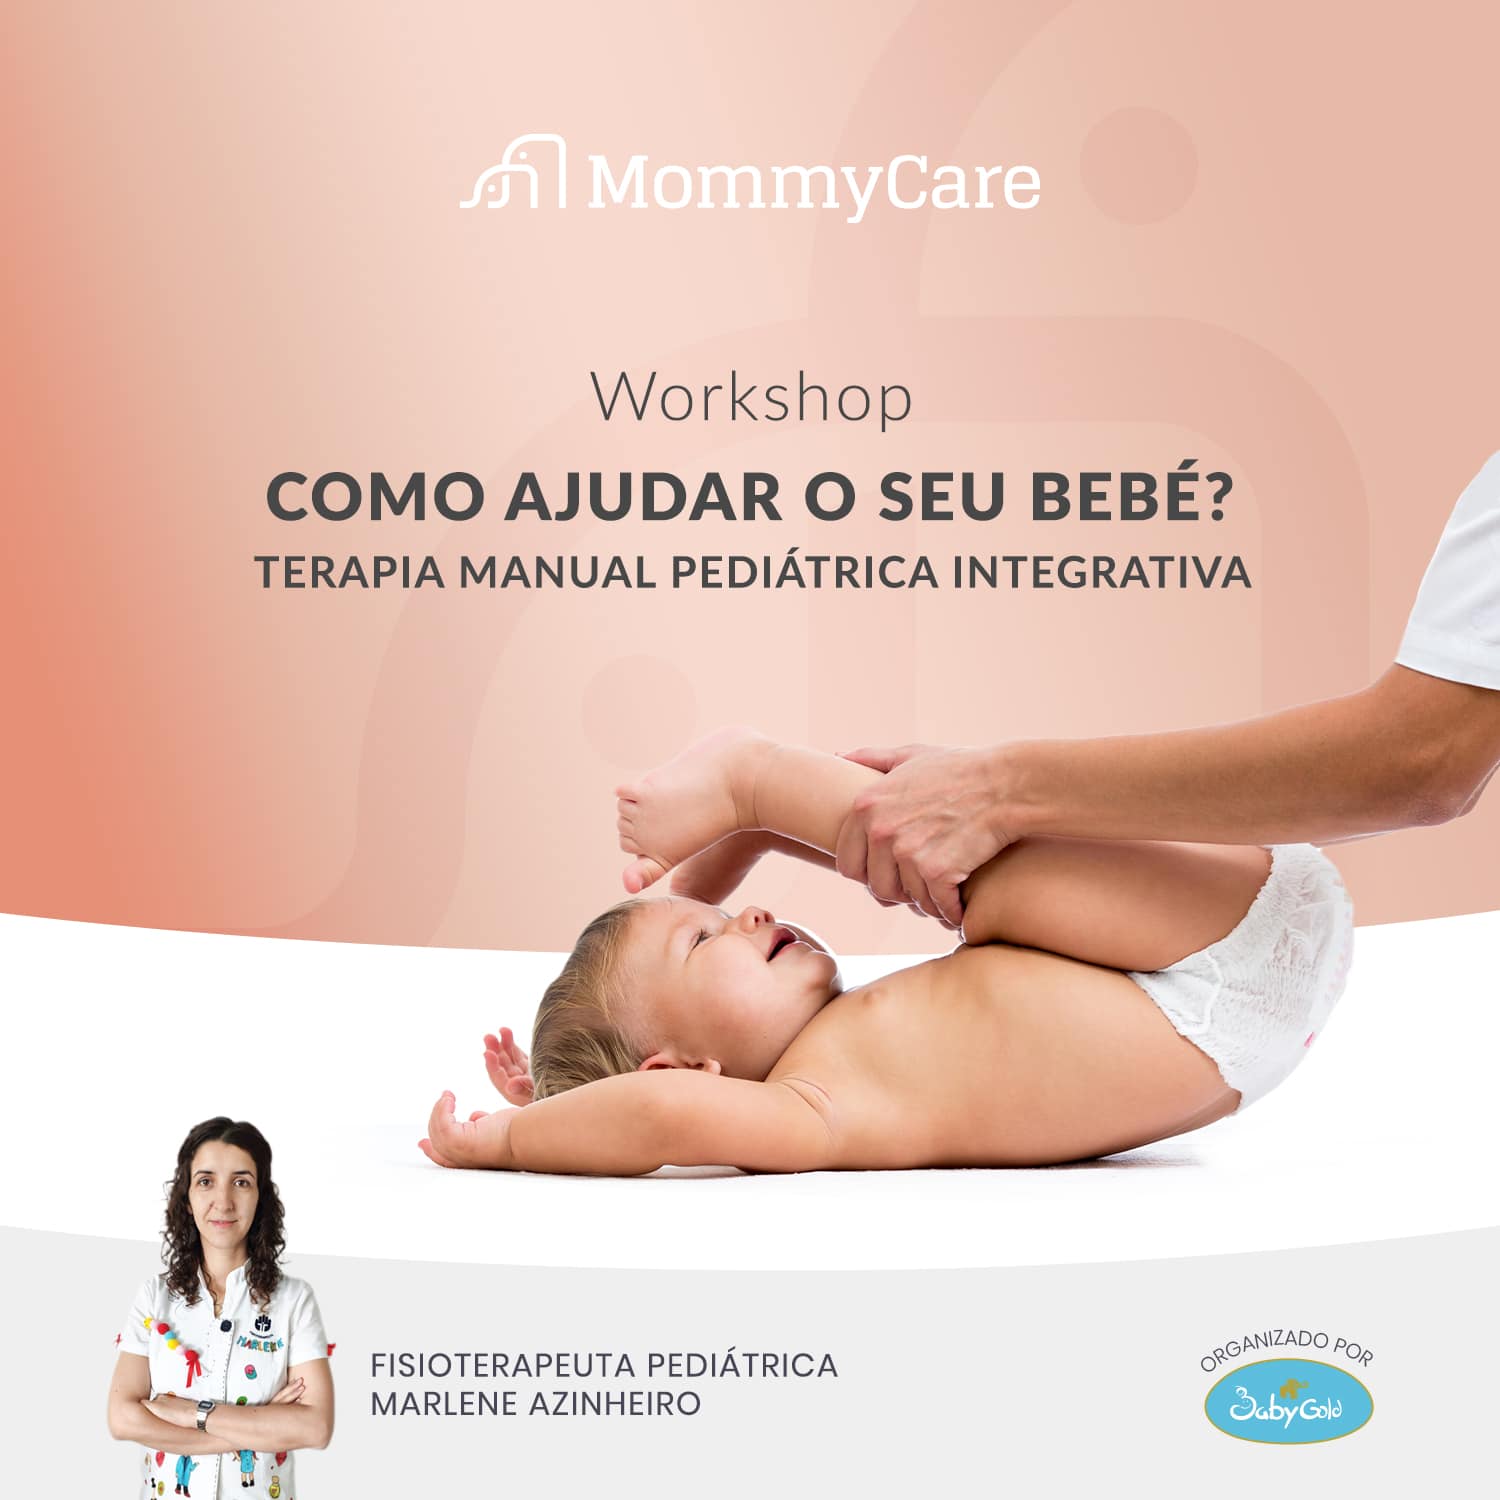 Workshop "Como Ajudar o seu Bebé"